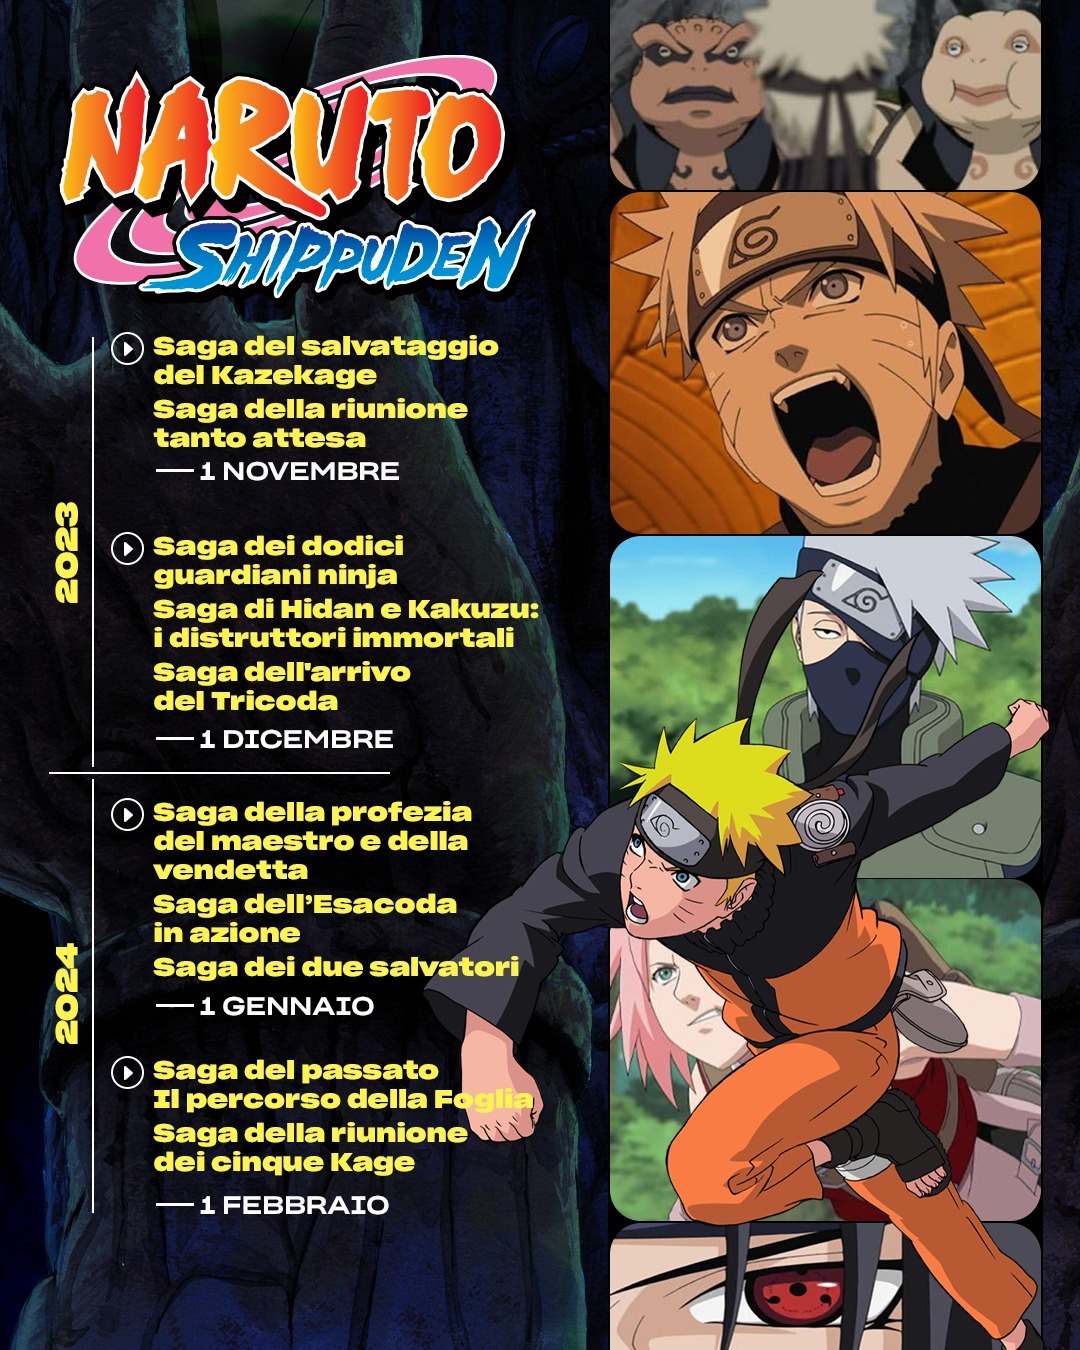 Yato on X: 🚨 Naruto Shippuden chega EM BREVE na @PrimeVideoBR. A previsão  é entre Novembro e Dezembro. Ainda não há informações de quantas temporadas,  e se serão dubladas ou apenas legendadas.